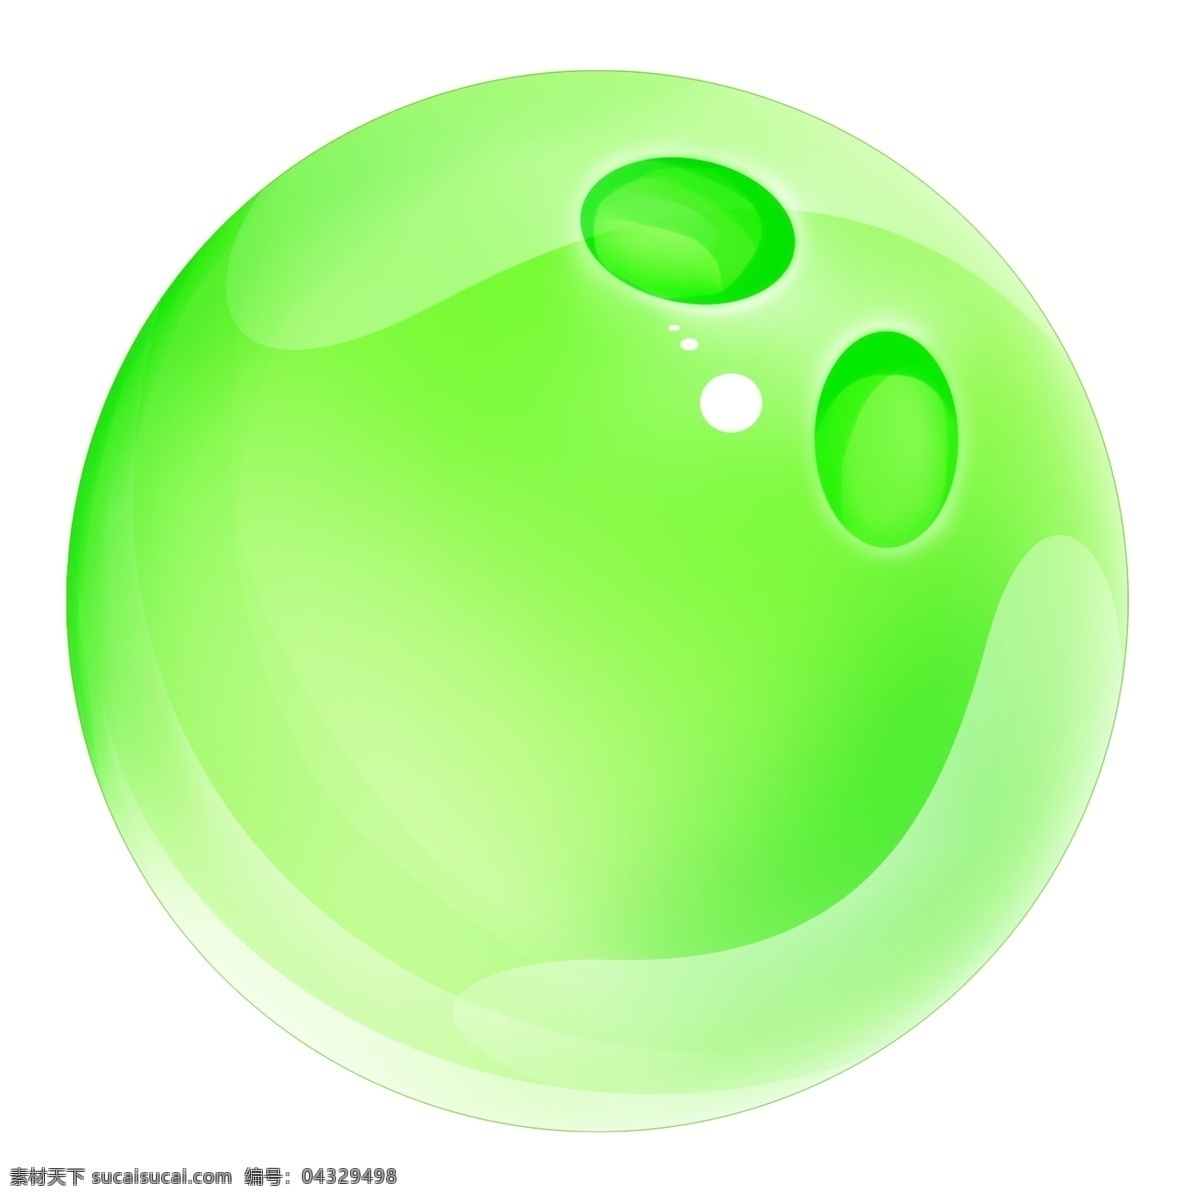 绿色 圆形 玻璃球 绿色球 玻璃